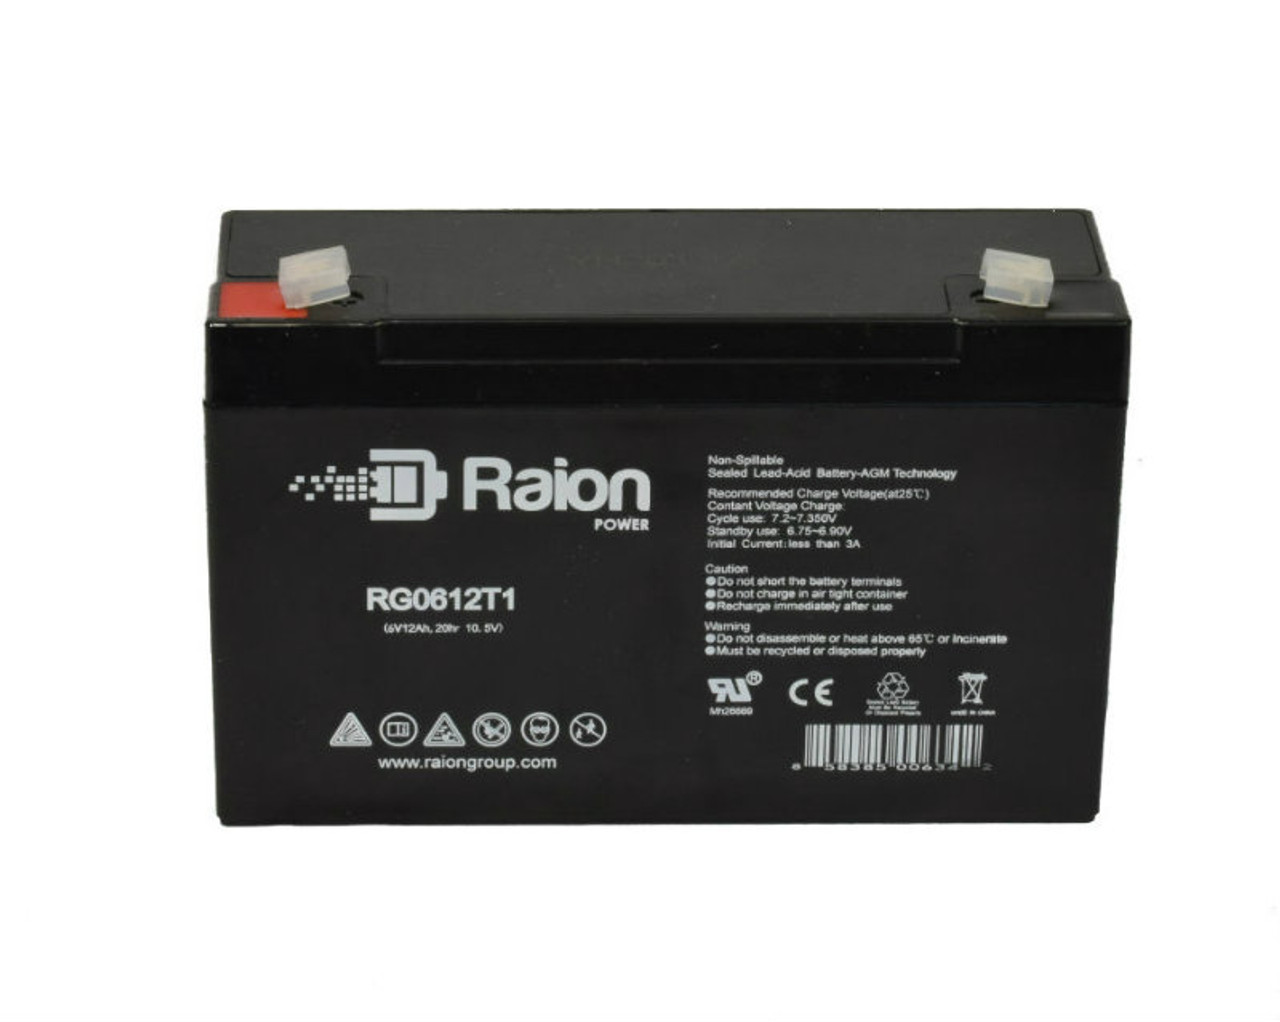 Raion Power RG06120T1 SLA Battery for Emergi-Lite M9